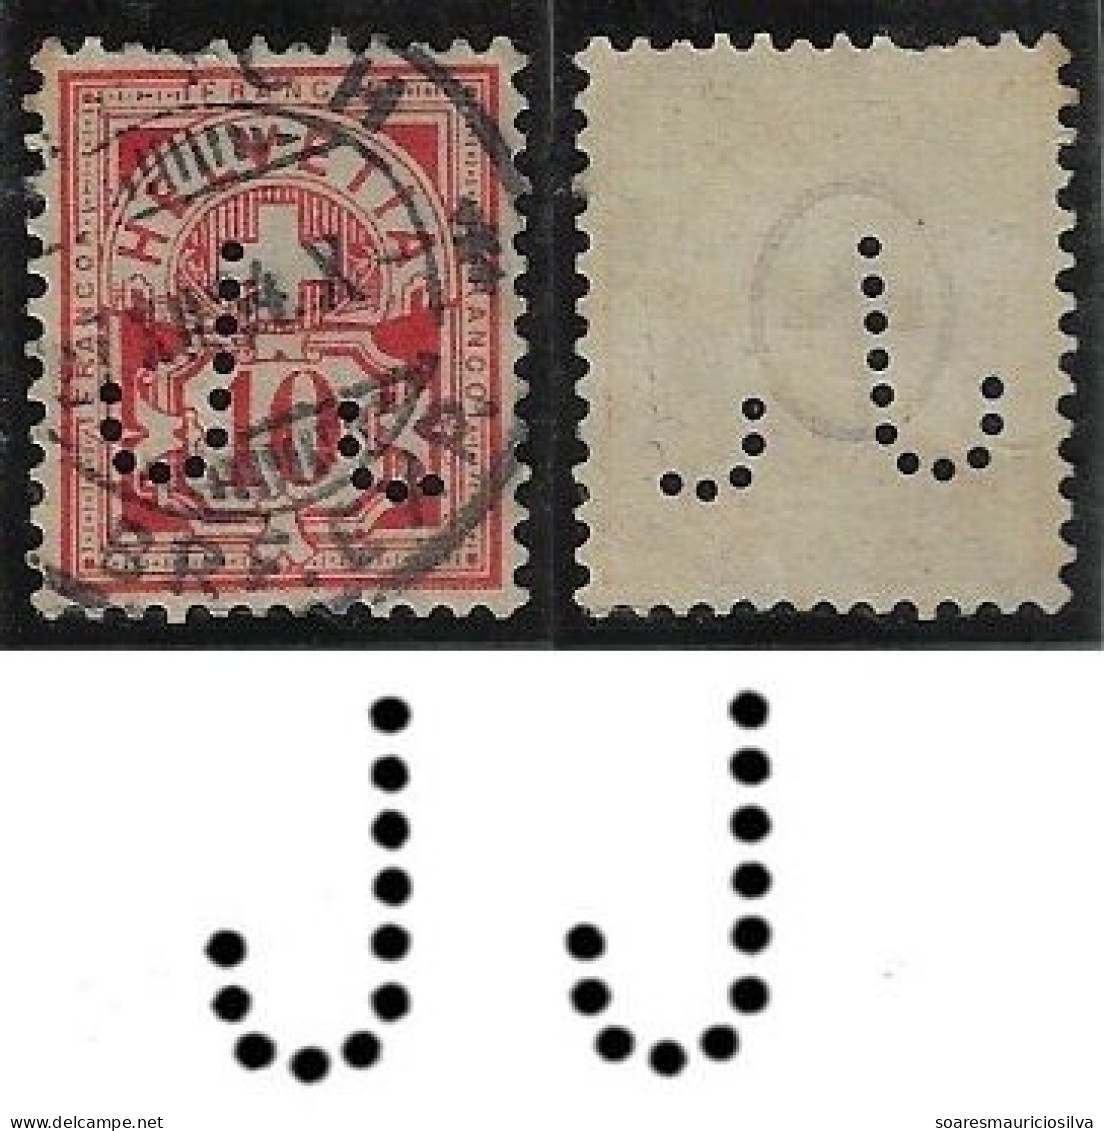 Switzerland 1901/1922 Stamp With Perfin JJ By J. Jäggli Centralhof Zurich Lochung Perfore - Perforadas